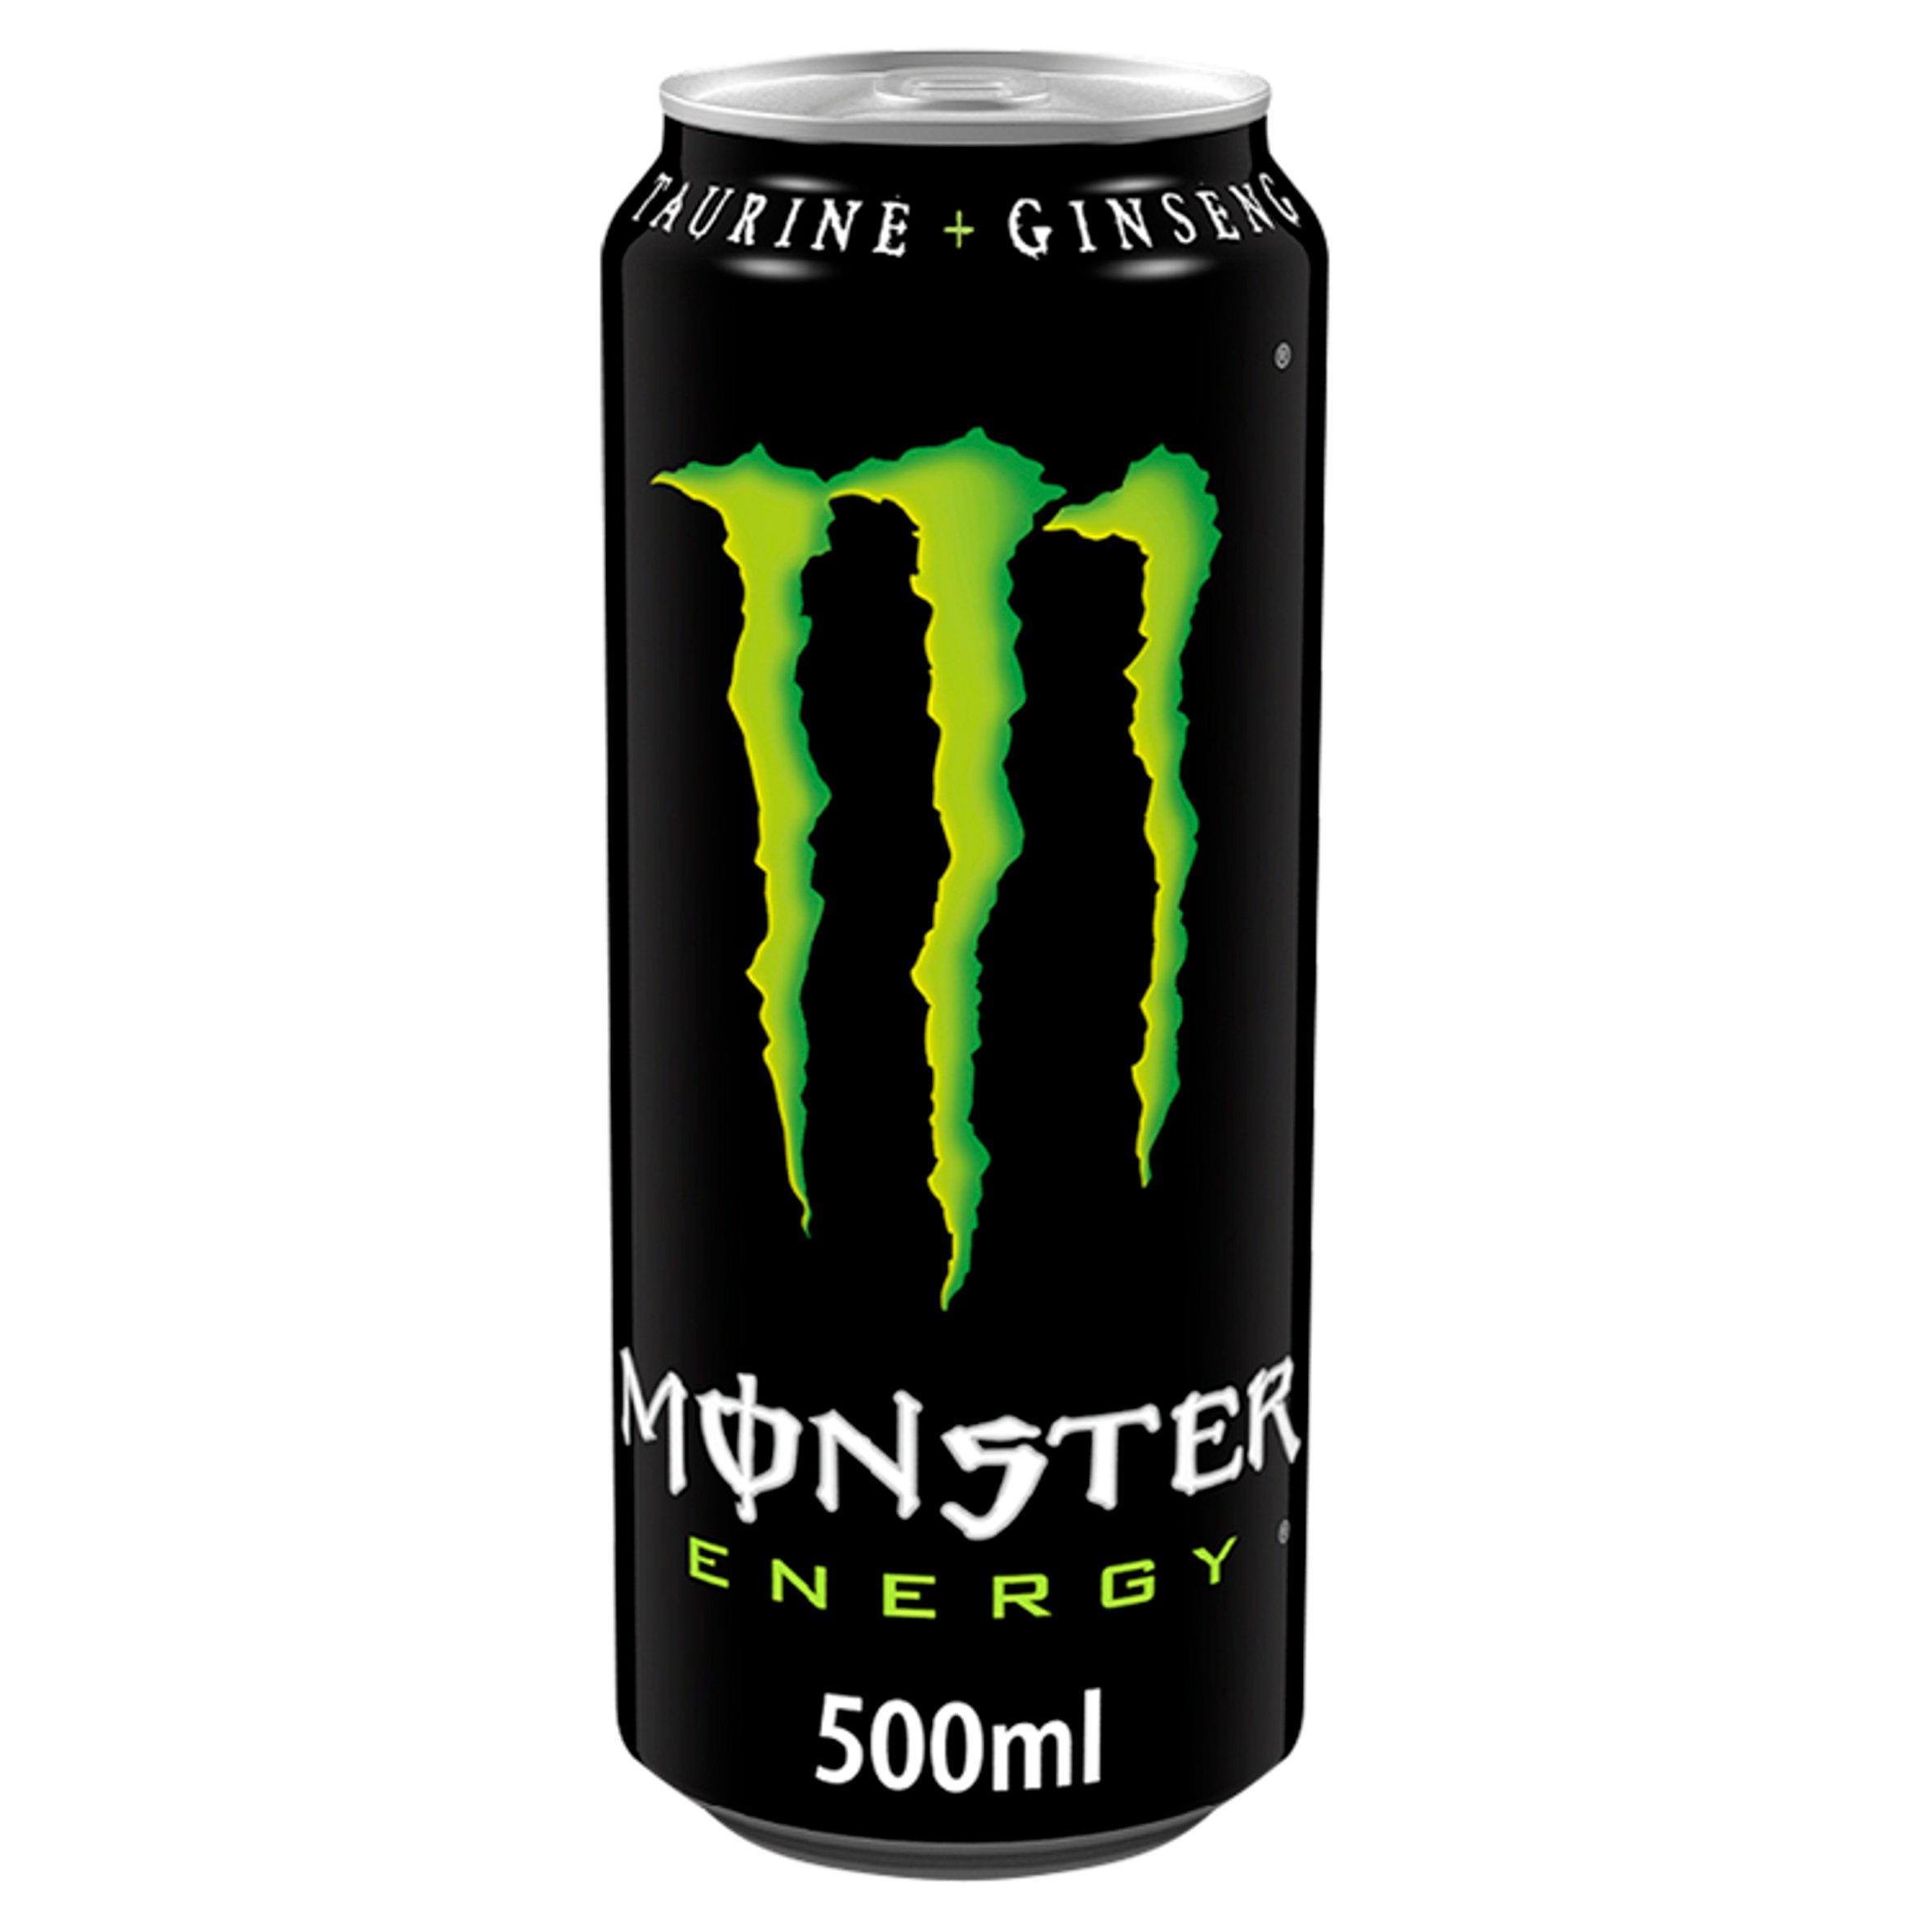 Monster Energy Drink 12 x 500ml